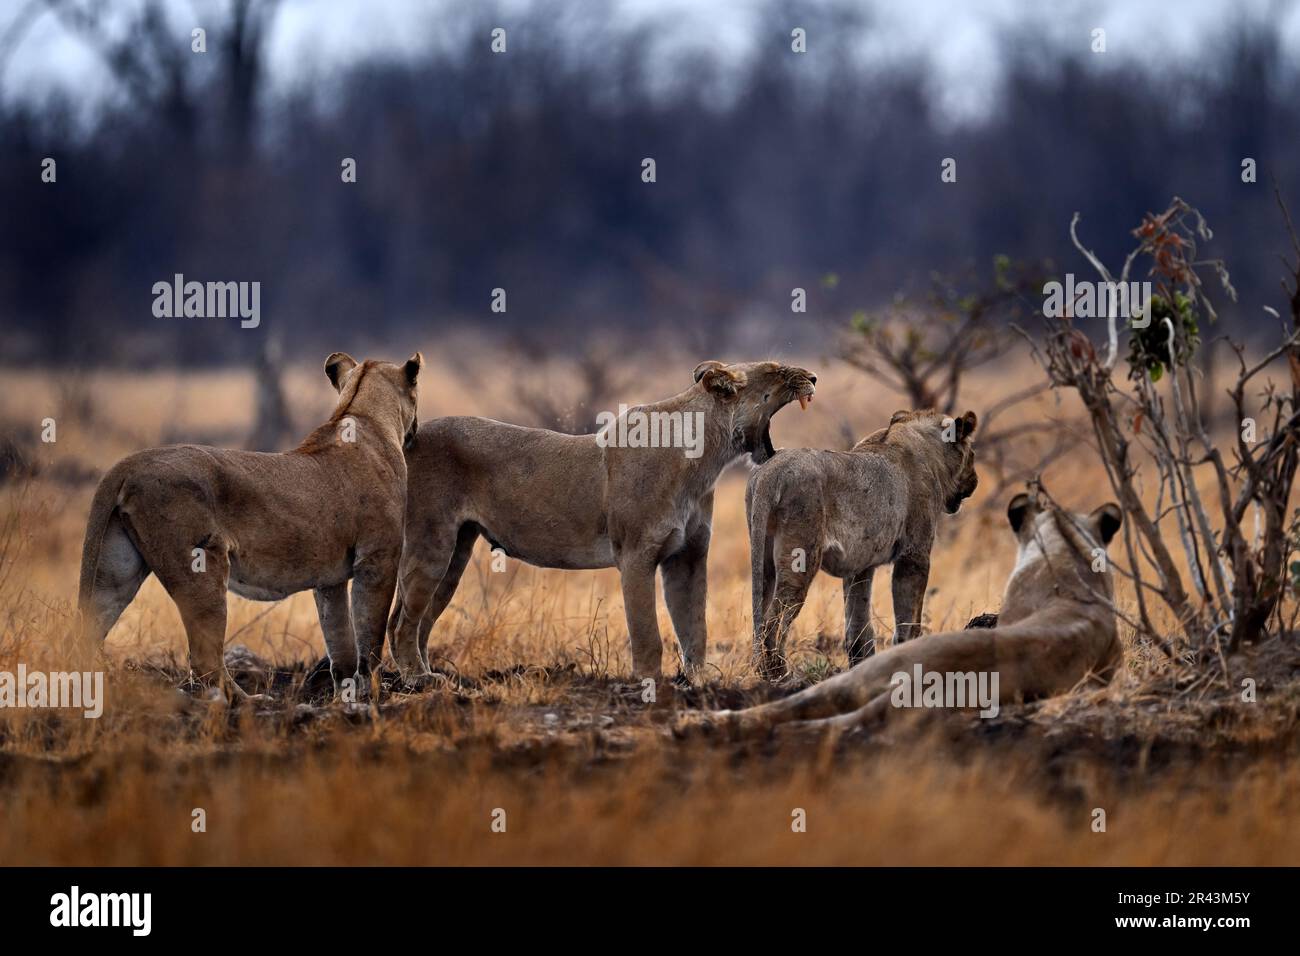 Lion family in nature, females in Savuti, Chobe NP in Botswana. Africa. Stock Photo